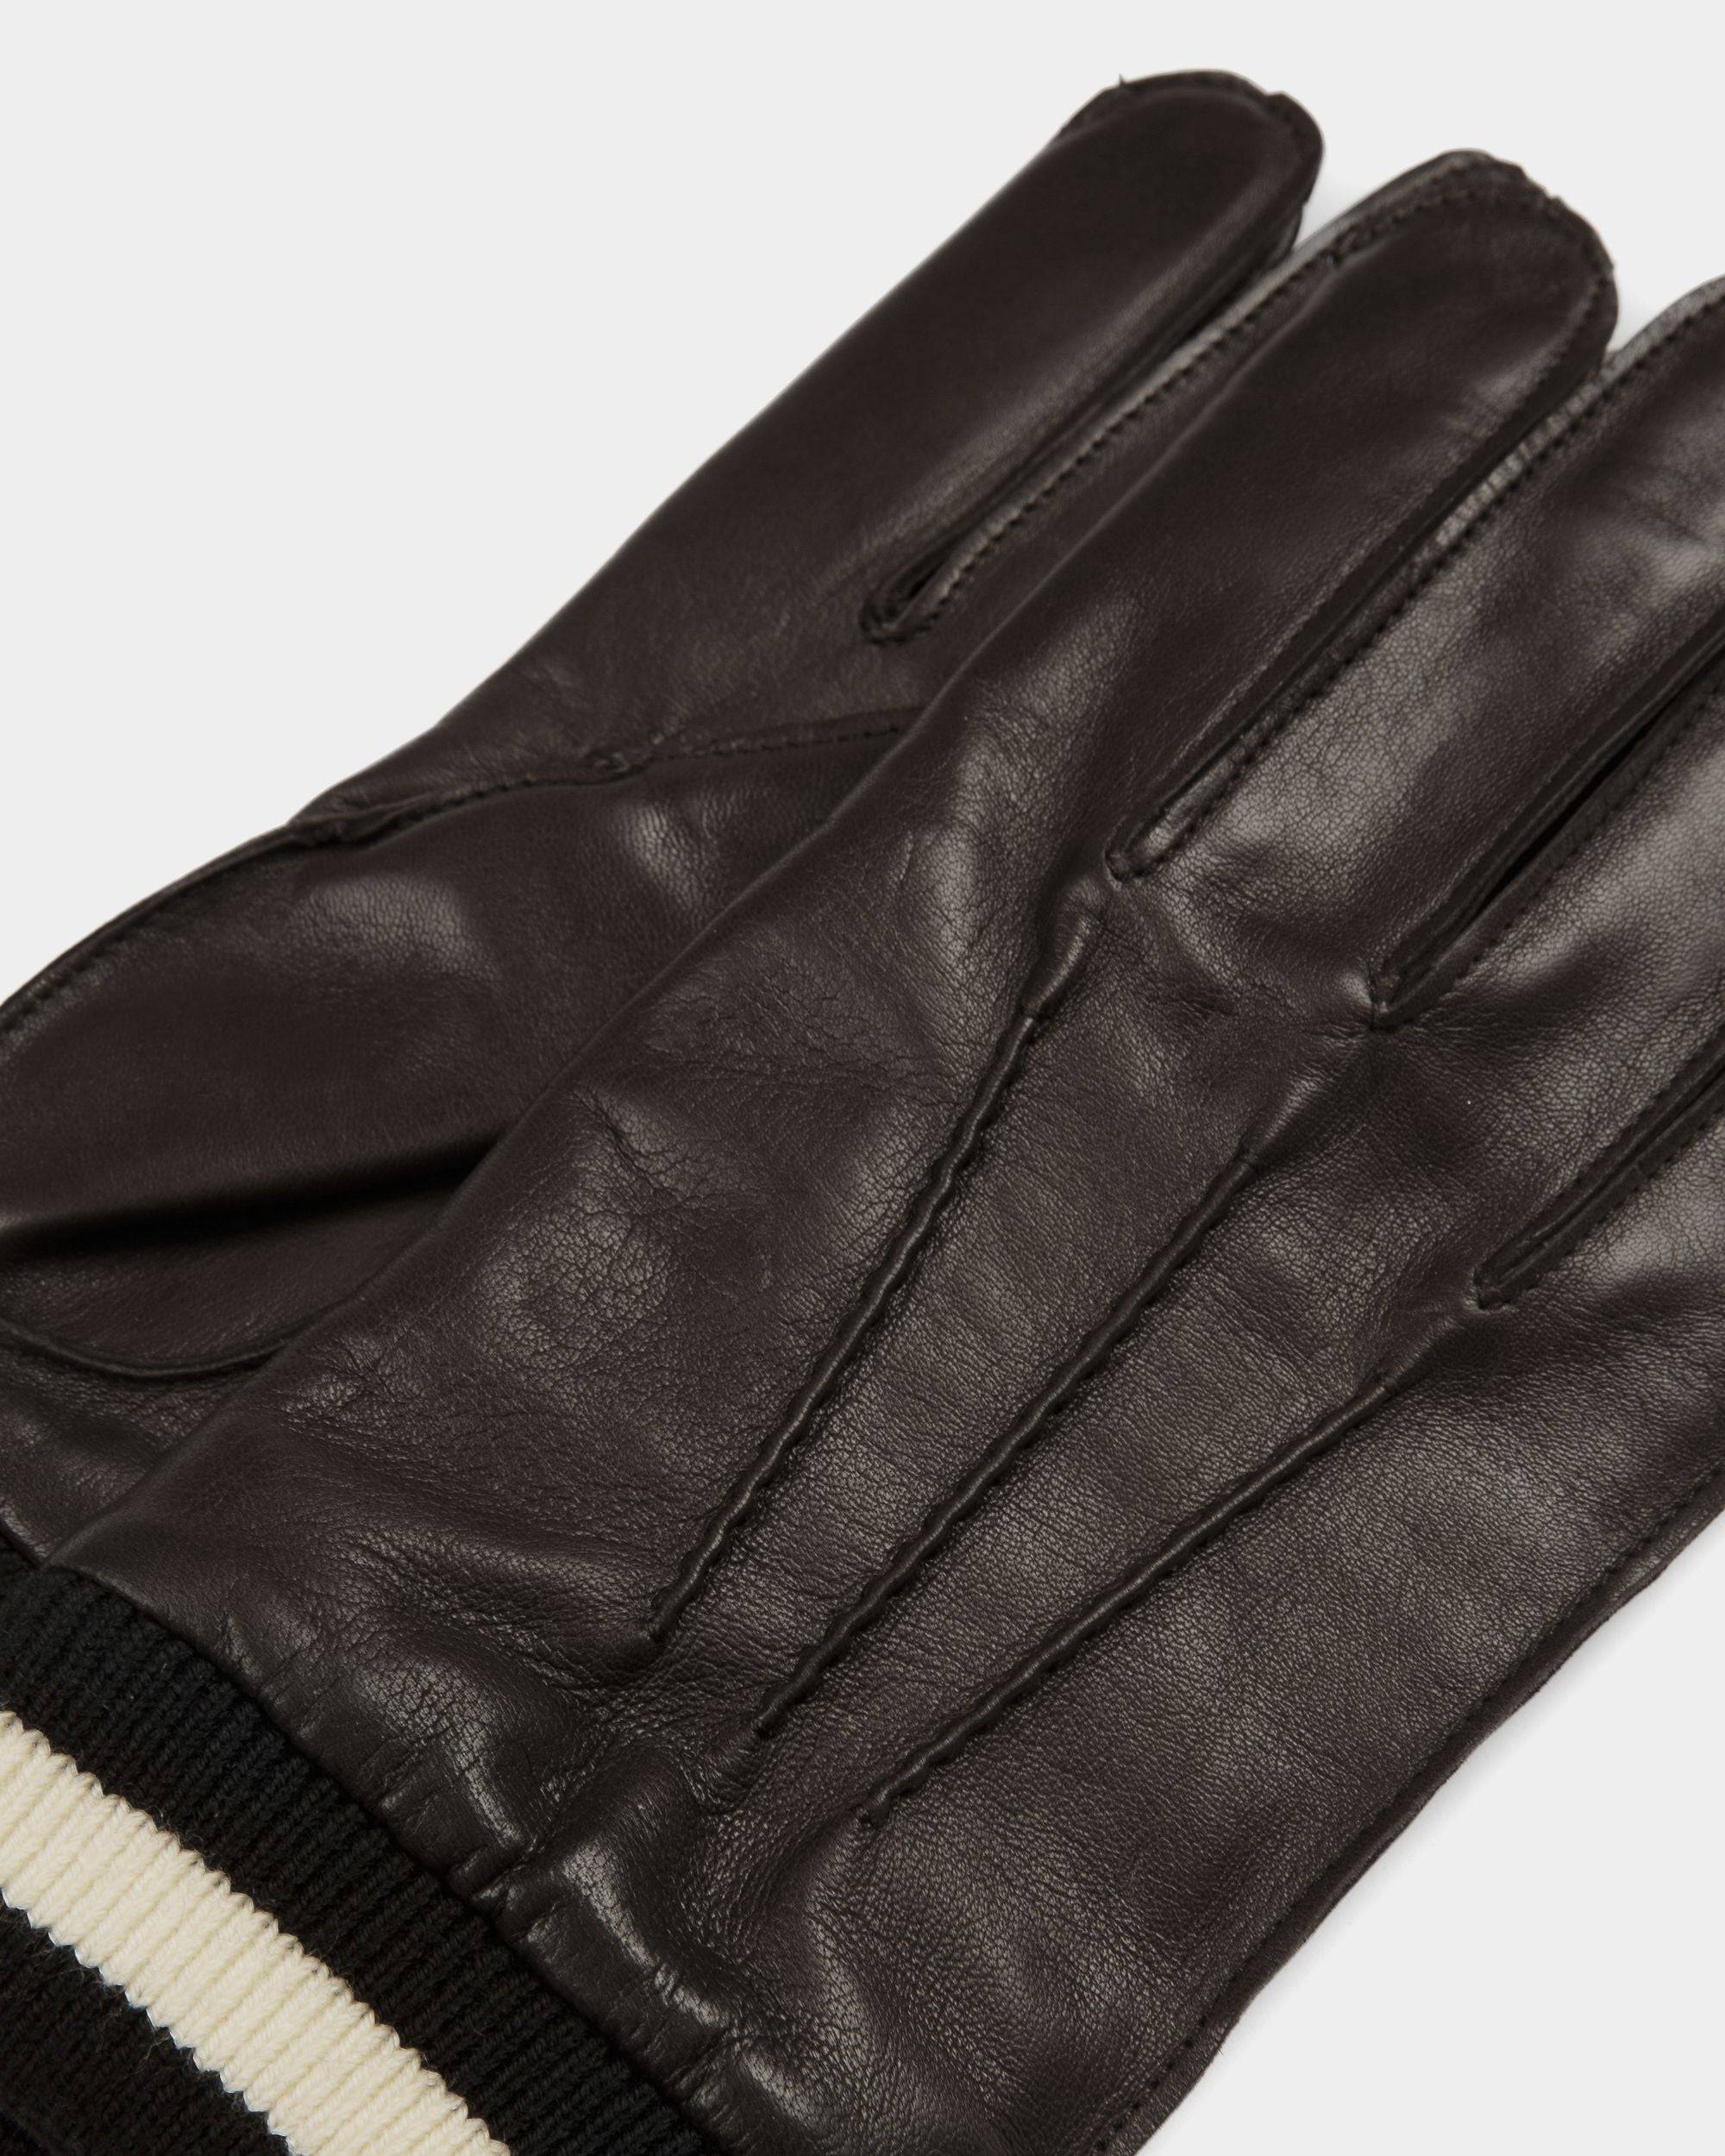 Stripe Gloves | Men's Gloves | Black Leather | Bally | Still Life Detail